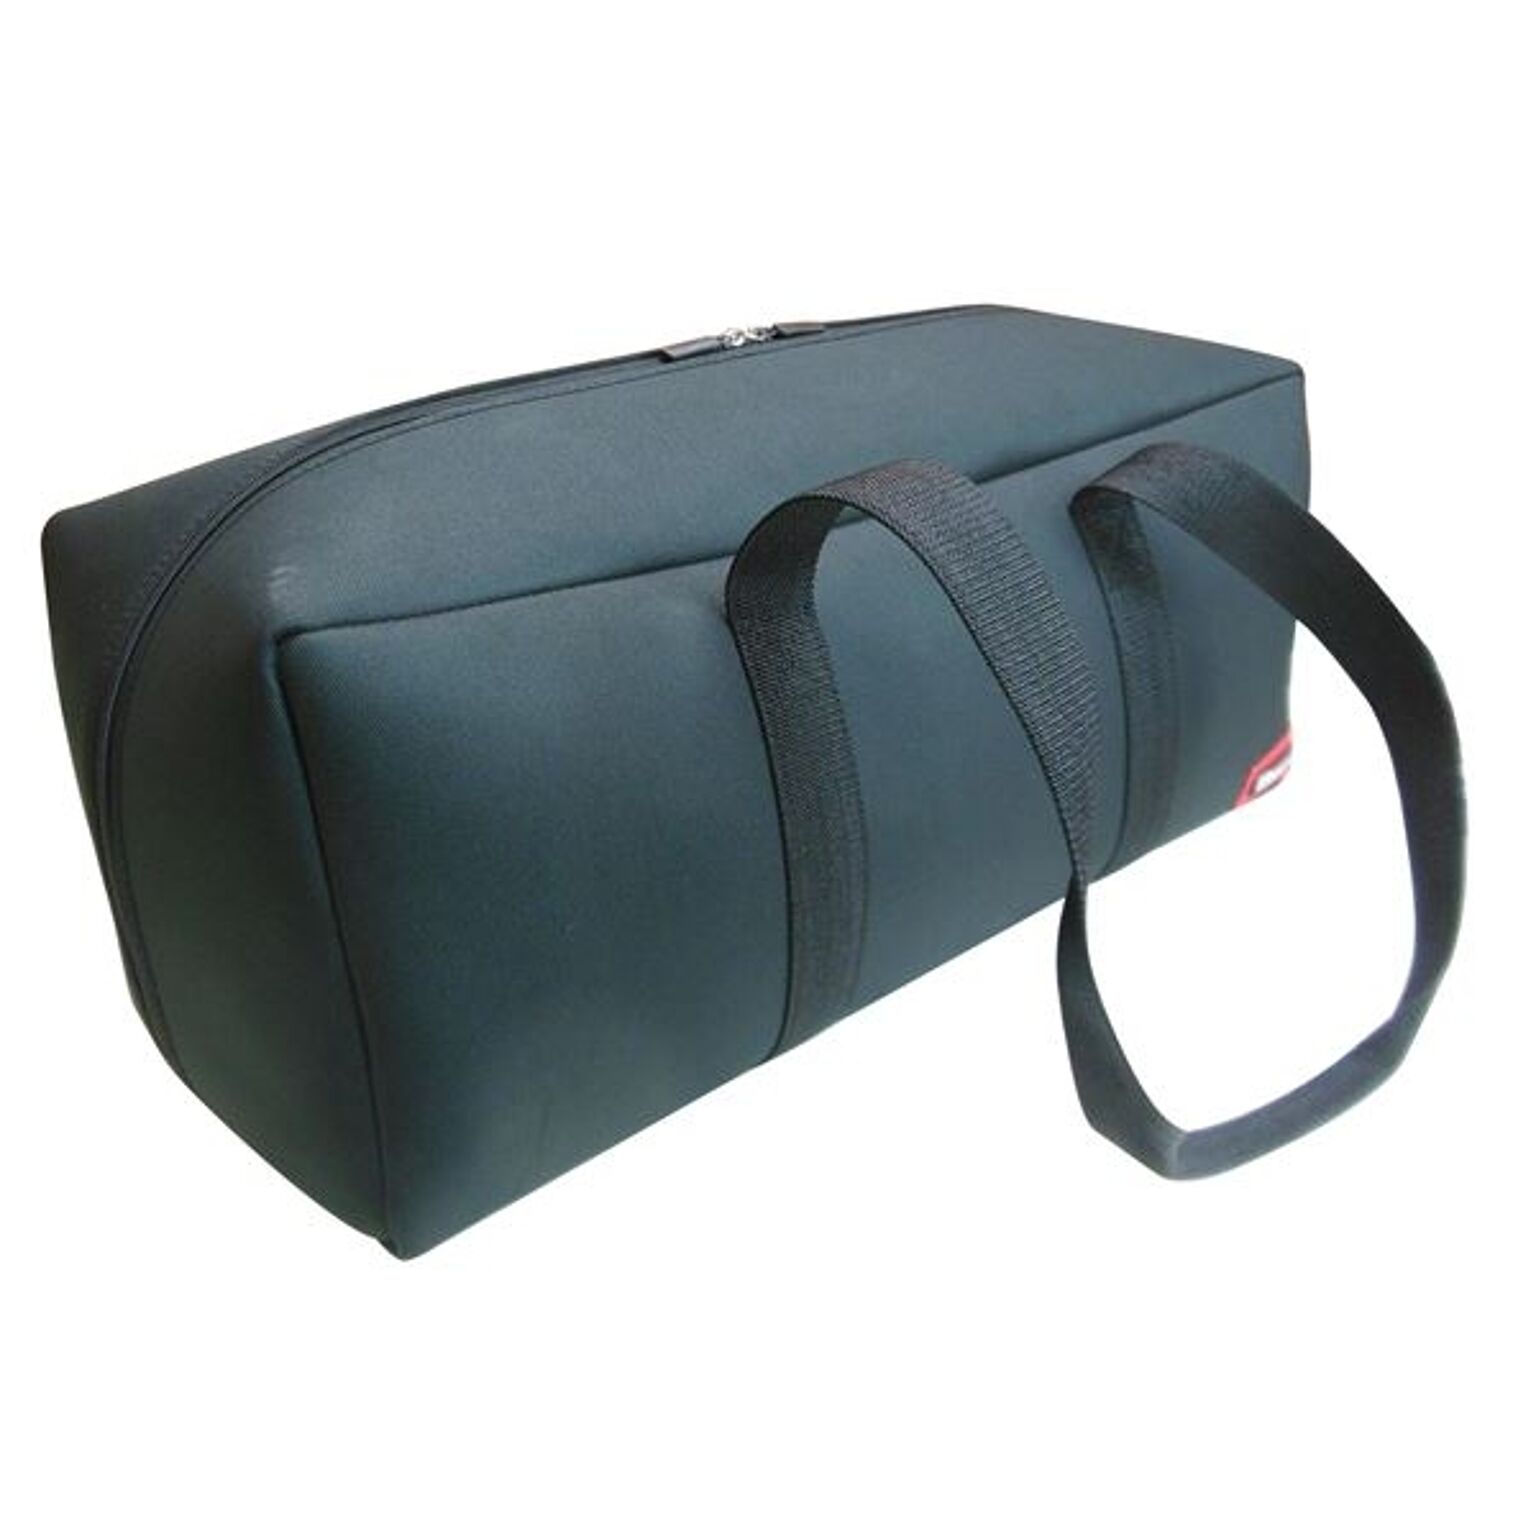 (業務用2個セット) DBLTACT トレジャーボックス(作業バッグ/手提げ鞄) LLサイズ 自立型/軽量 DTQ-LL-BK ブラック 〔収納用具〕